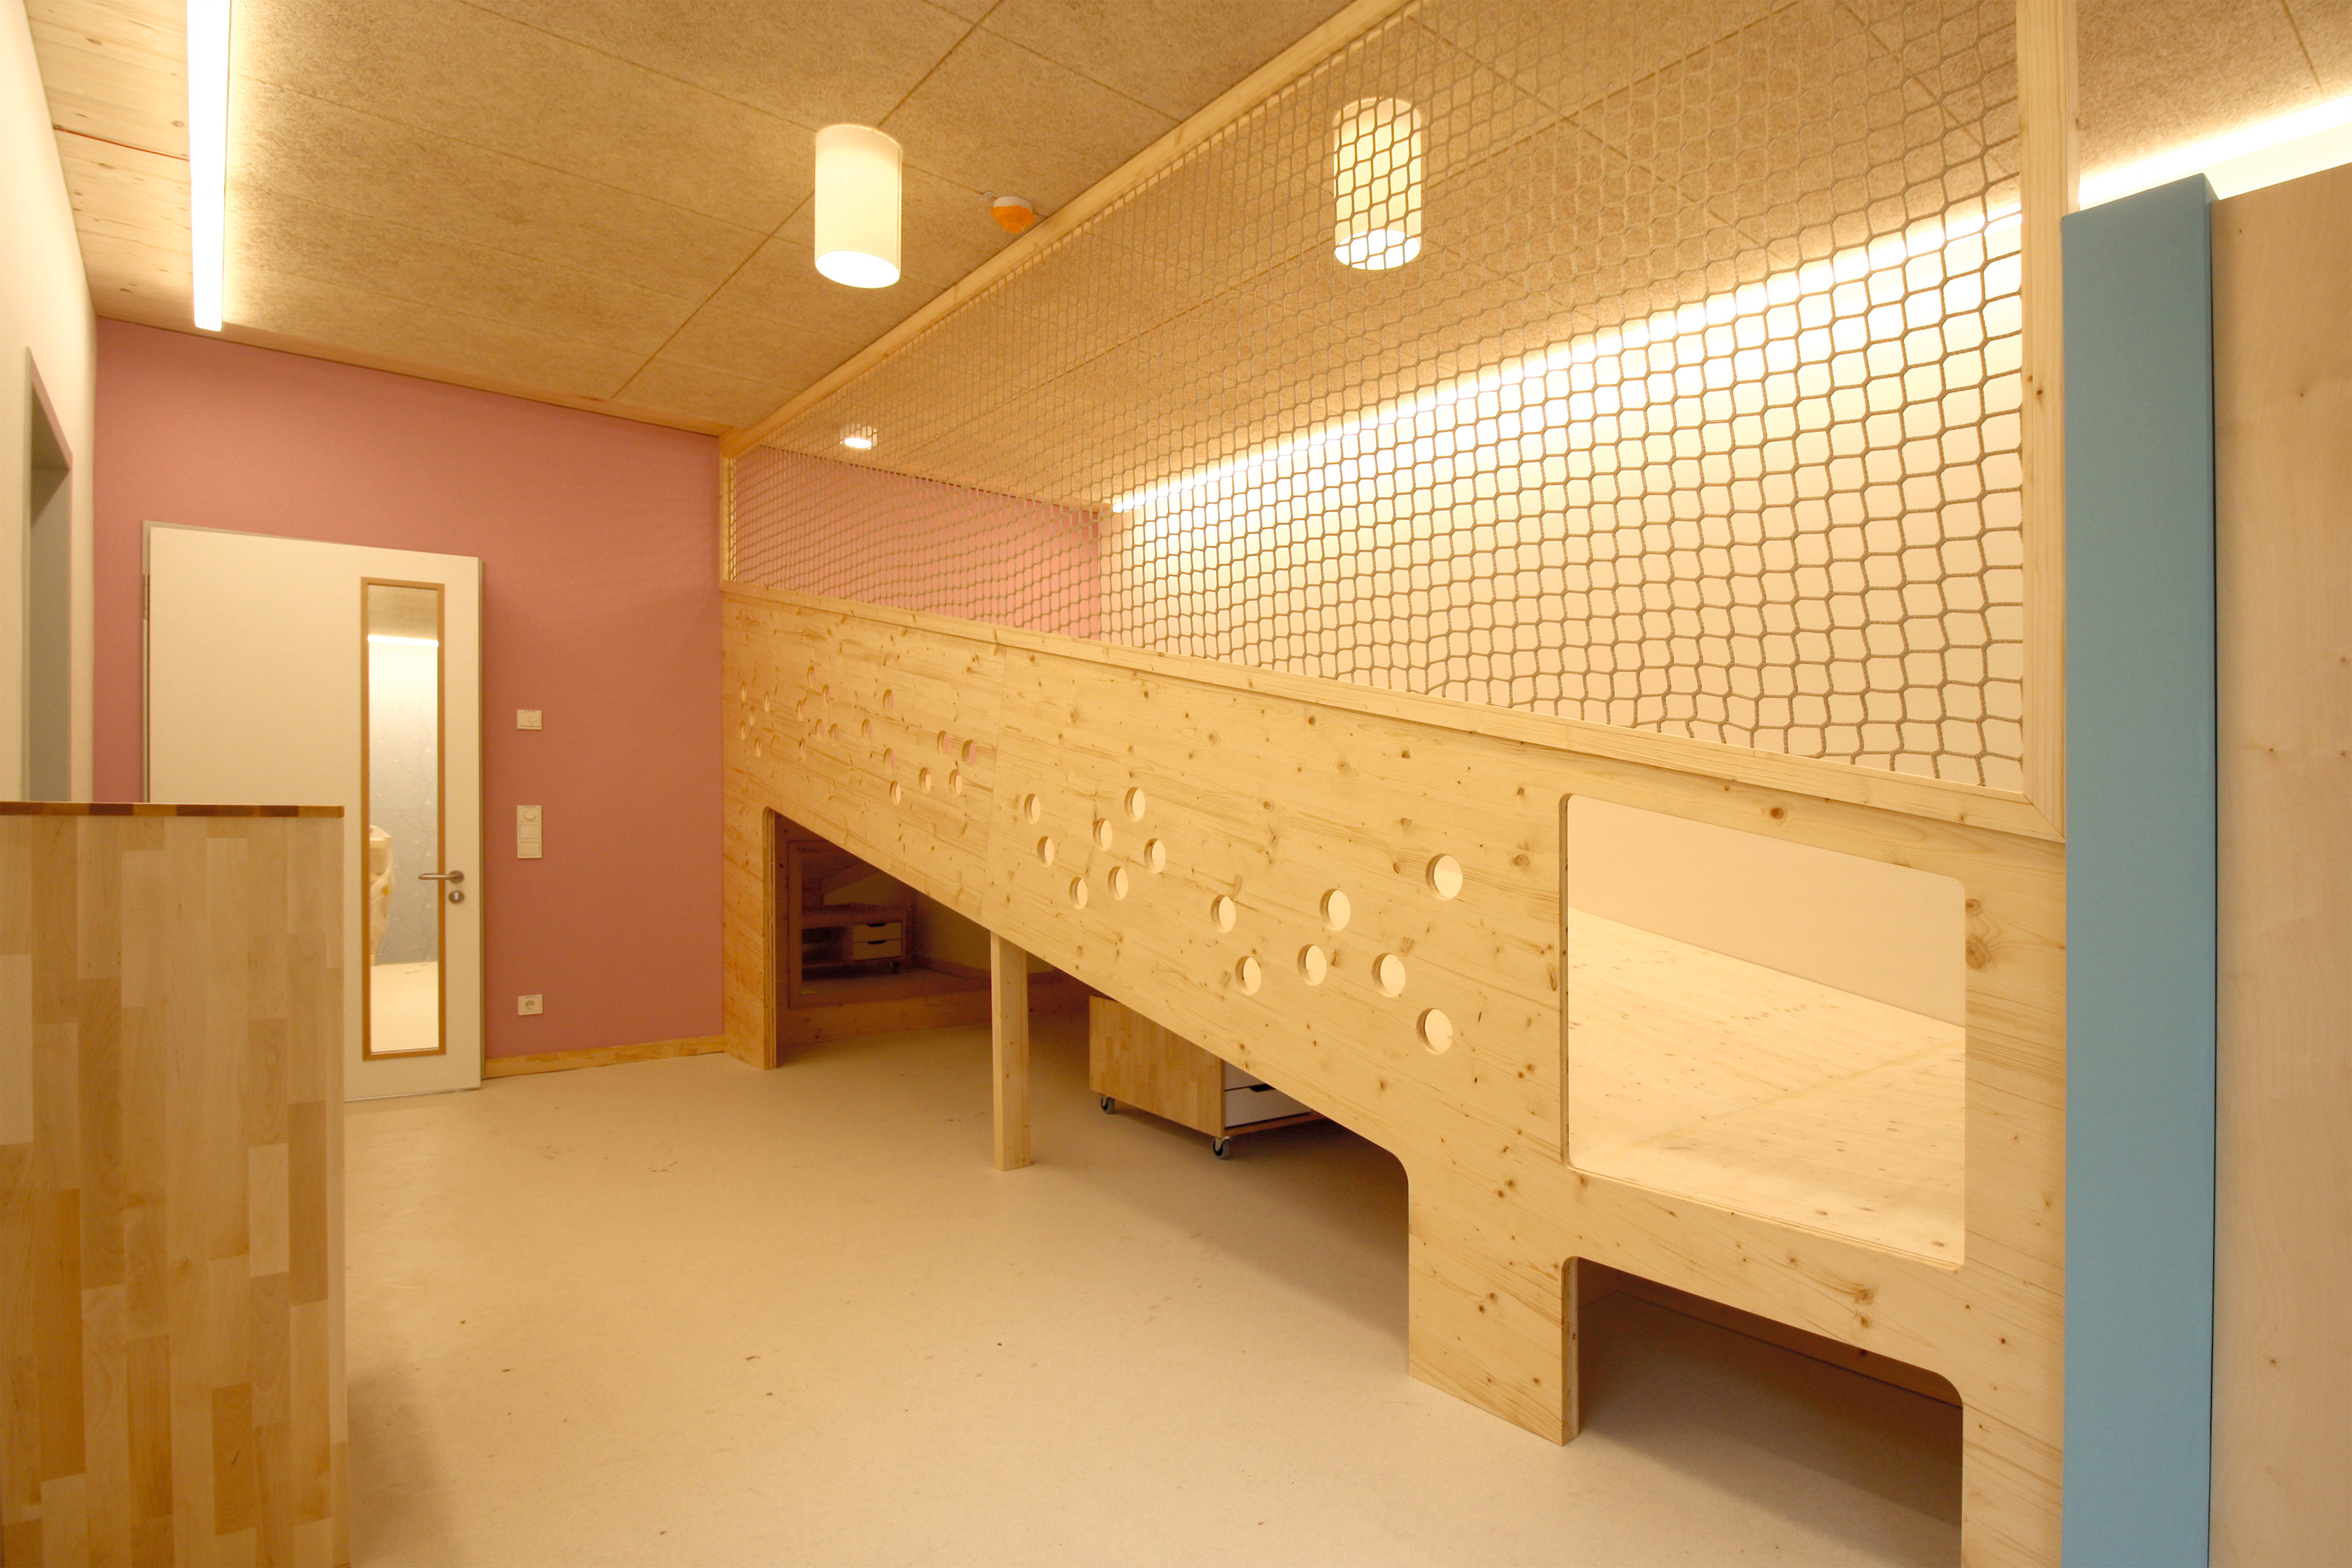 Die Verwendung natürlicher Materialien spiegeln das pädagogische Konzept der Kita wider. © FreiOrt Architekten